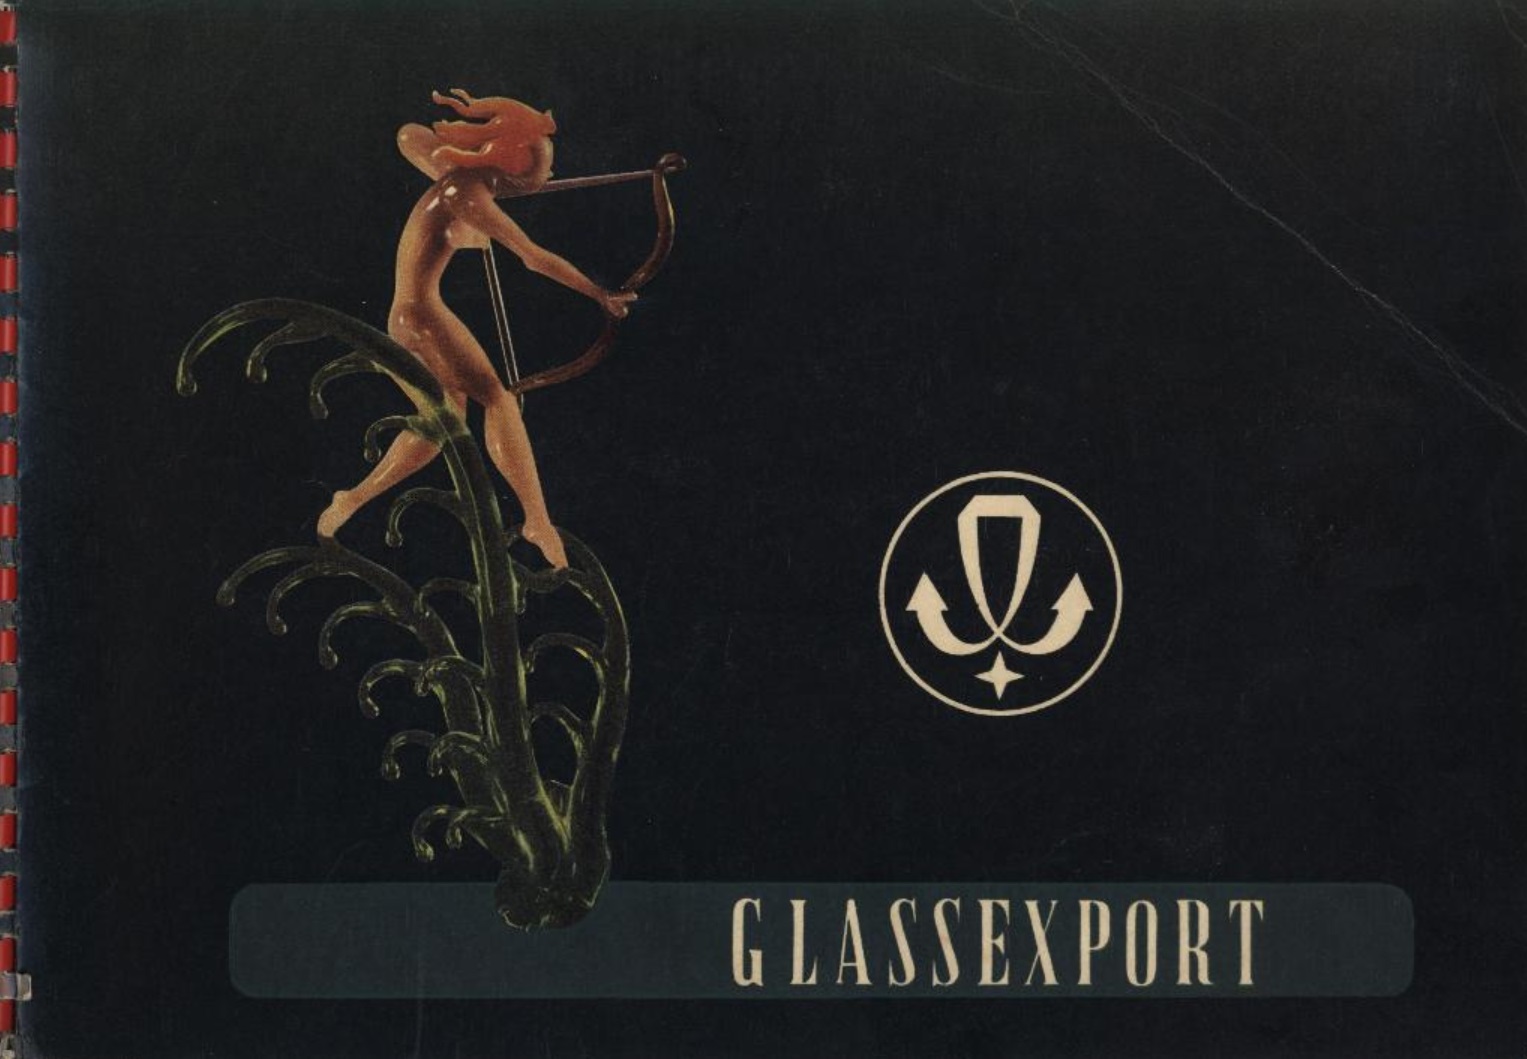 Glassexport Železný Brod 1949